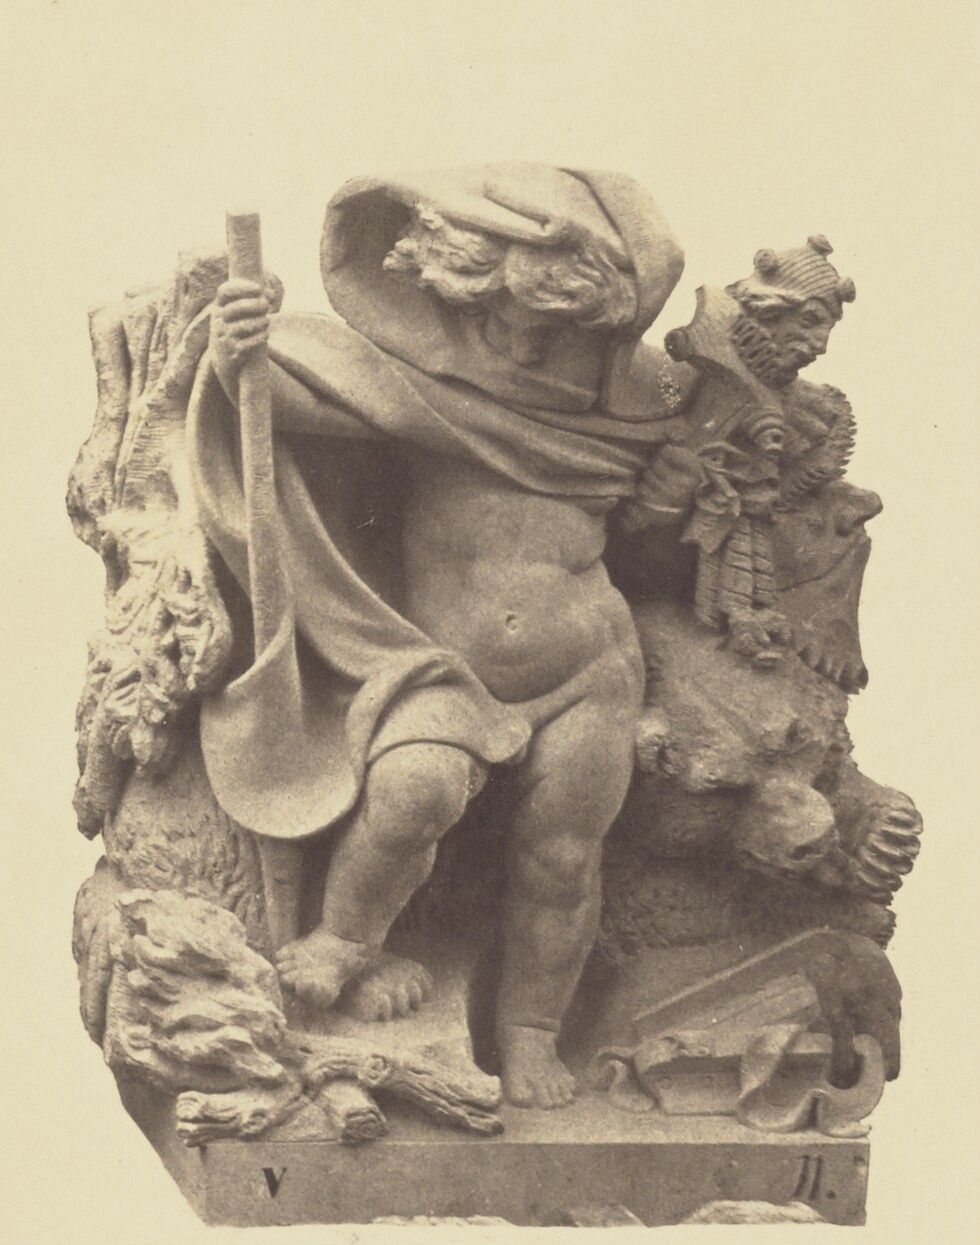 "L'Hiver", Sculpture by Georges Clère, Decoration of the Louvre, Paris by Édouard Baldus